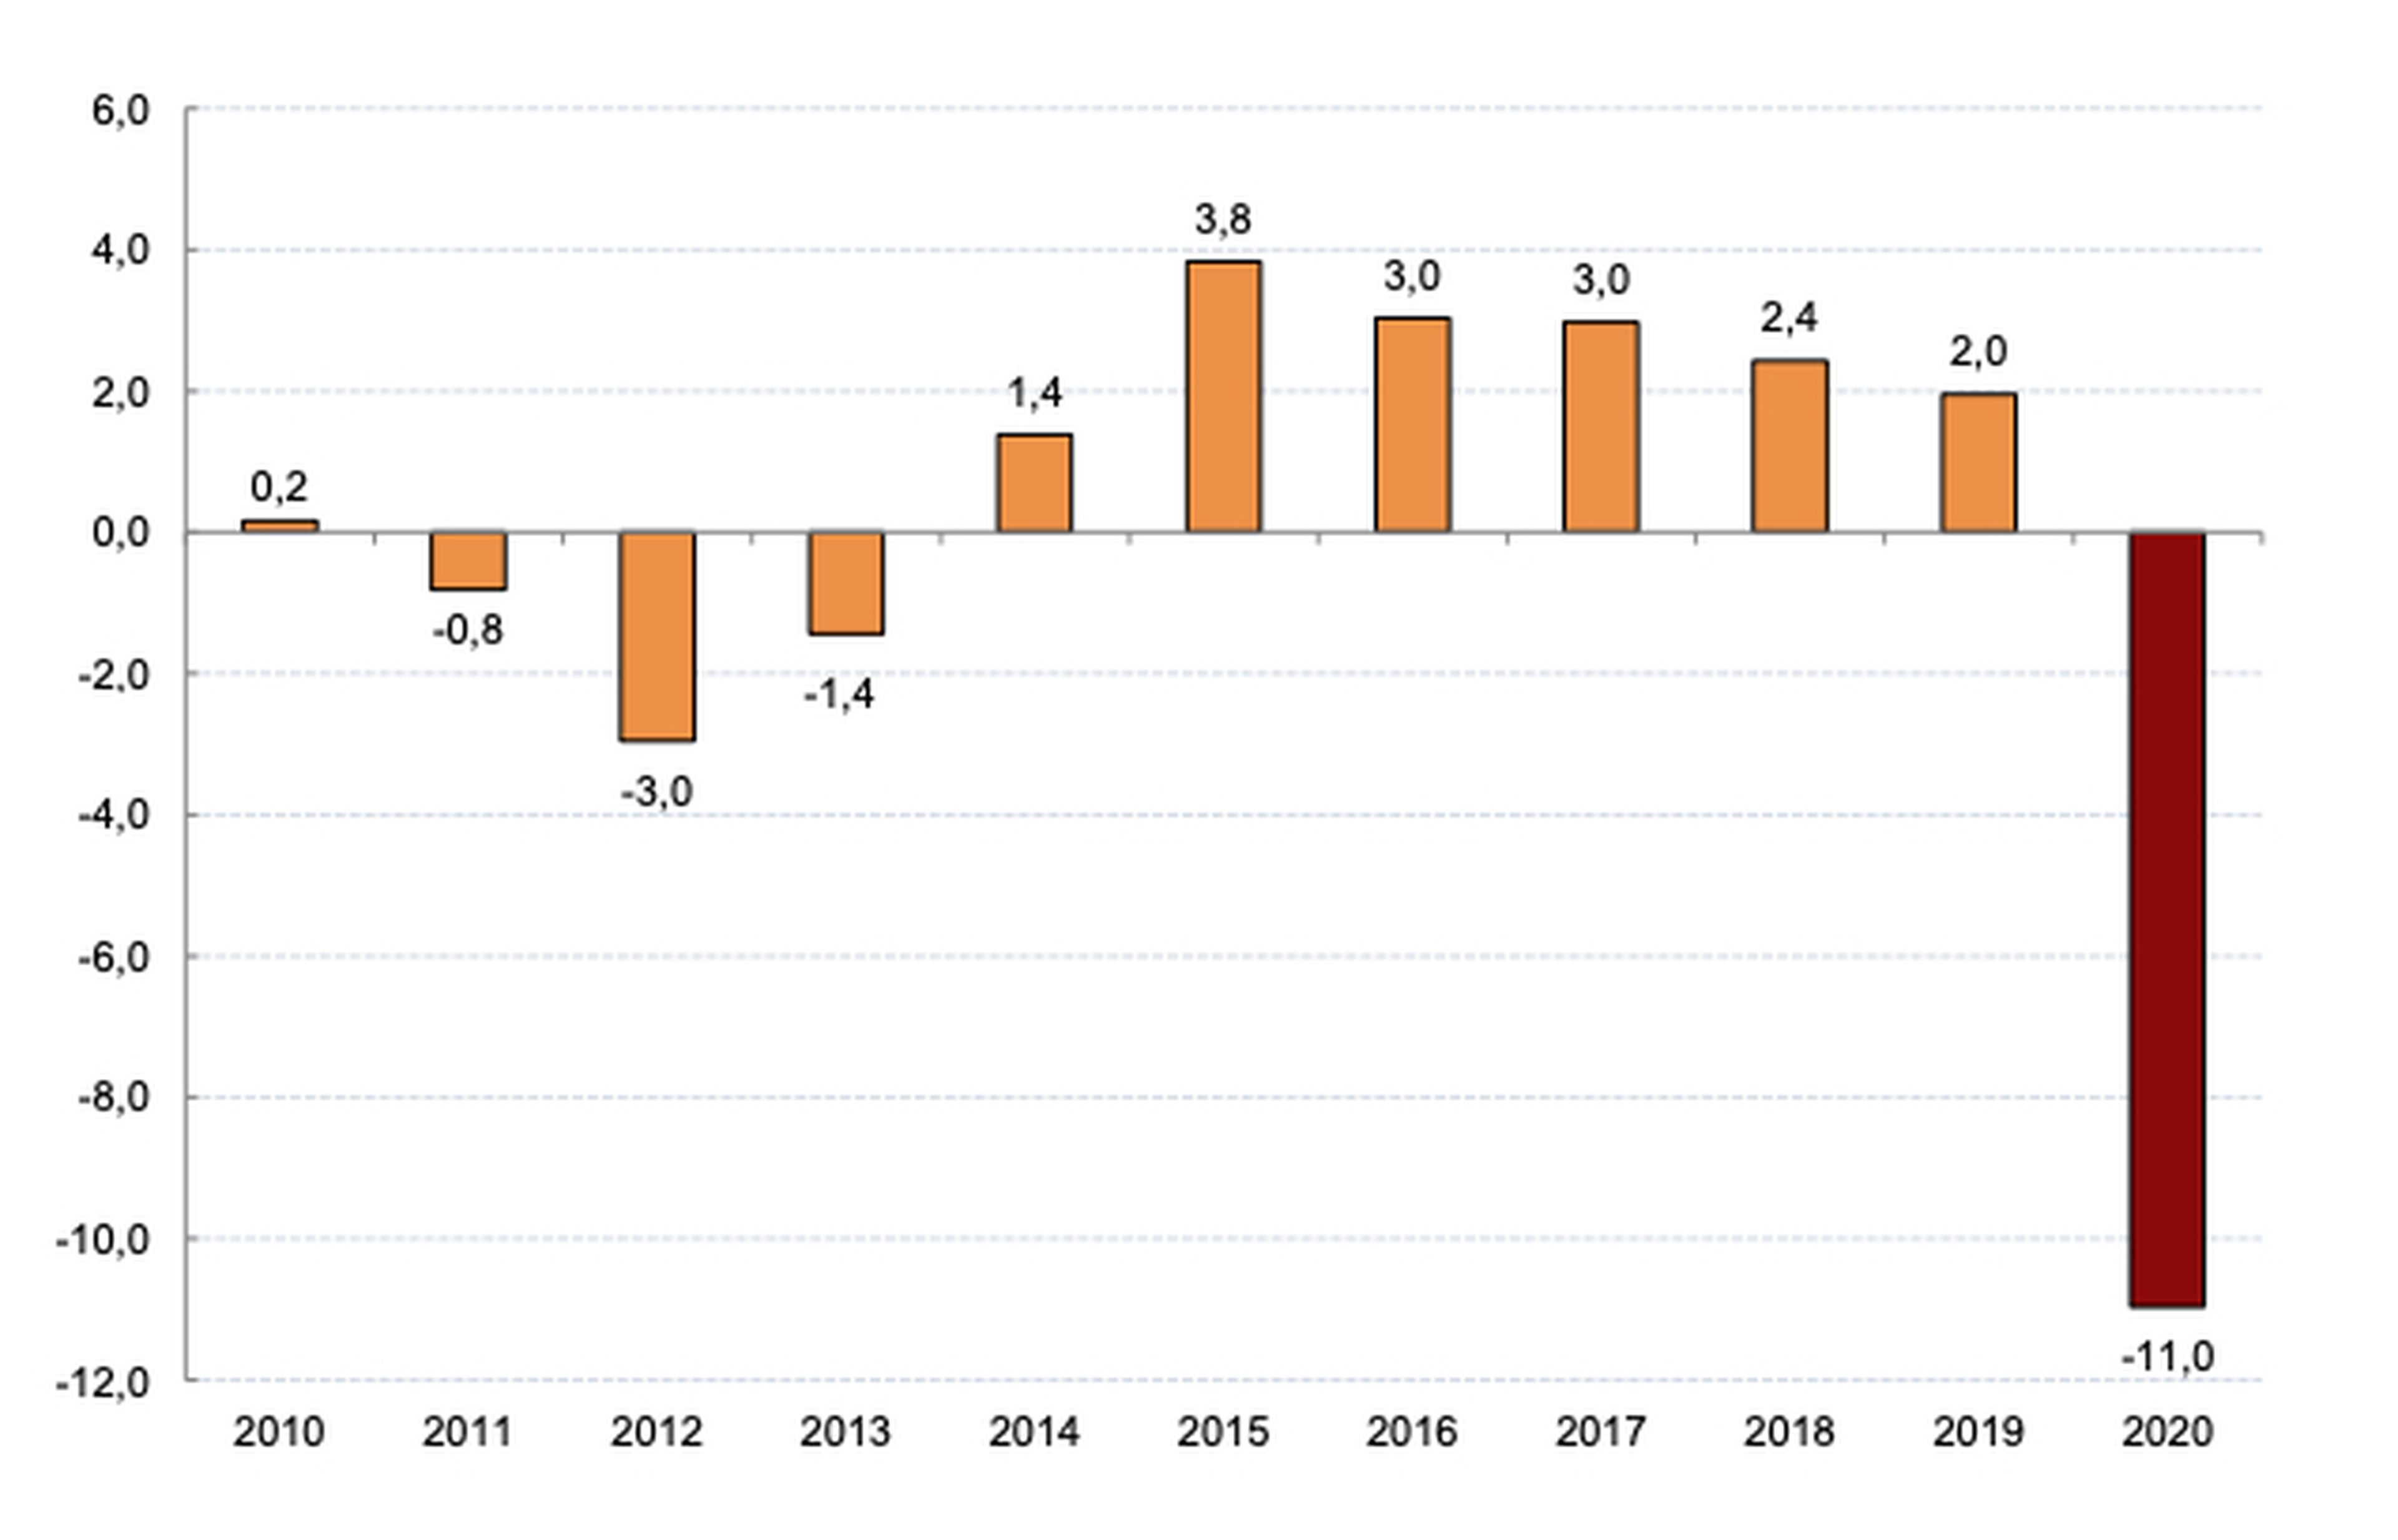 Evolución anual del PIB español entre 2010 y 2020